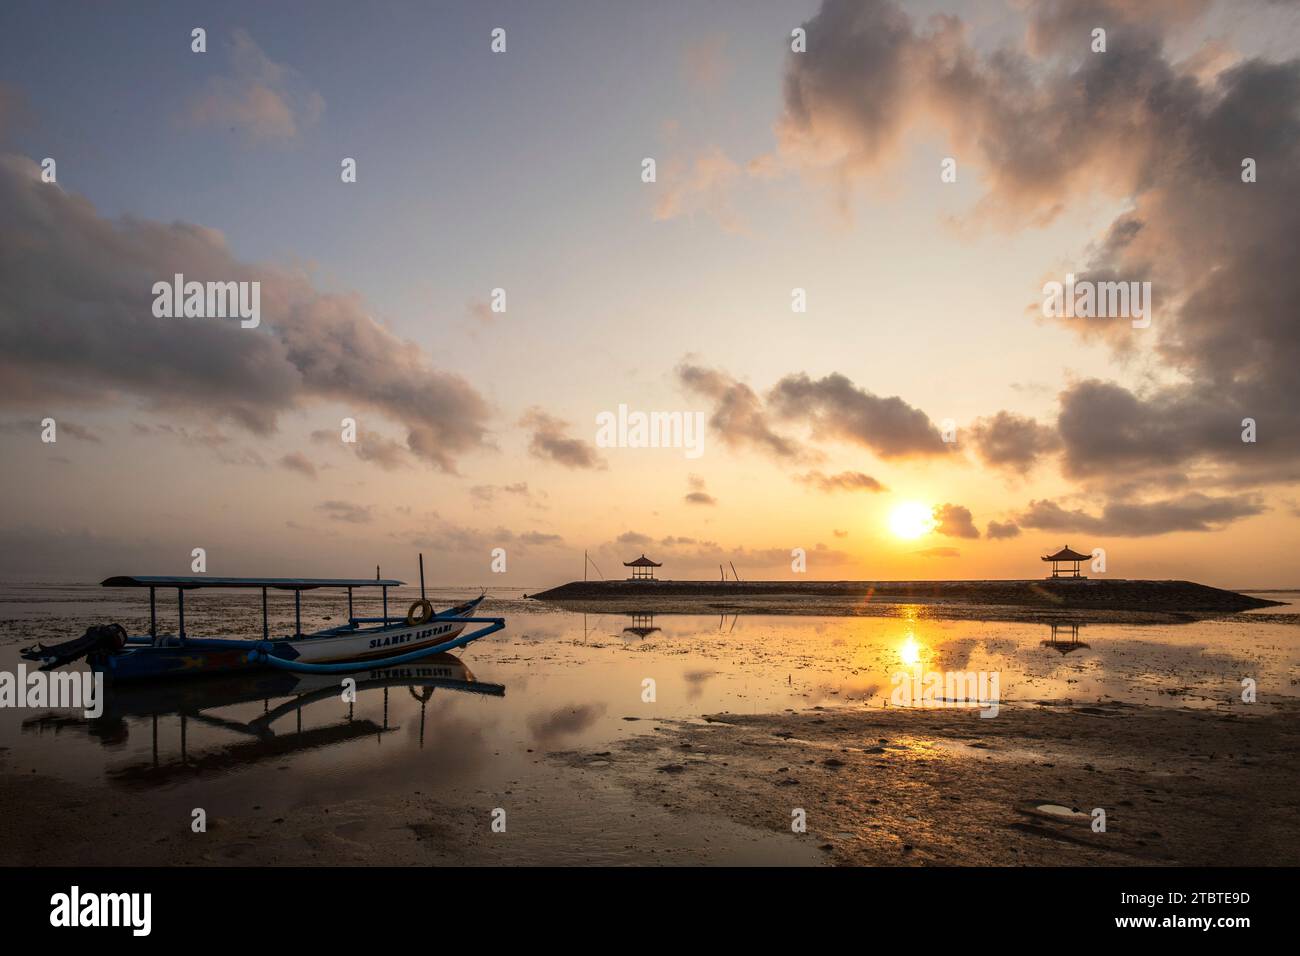 Paysage matinal pris sur une plage de sable, vue sur la mer à l'horizon avec de petits temples dans l'eau et un jukung, un bateau de pêche traditionnel, sur la plage, lever du soleil à Sanur, Bali, Indonésie Banque D'Images